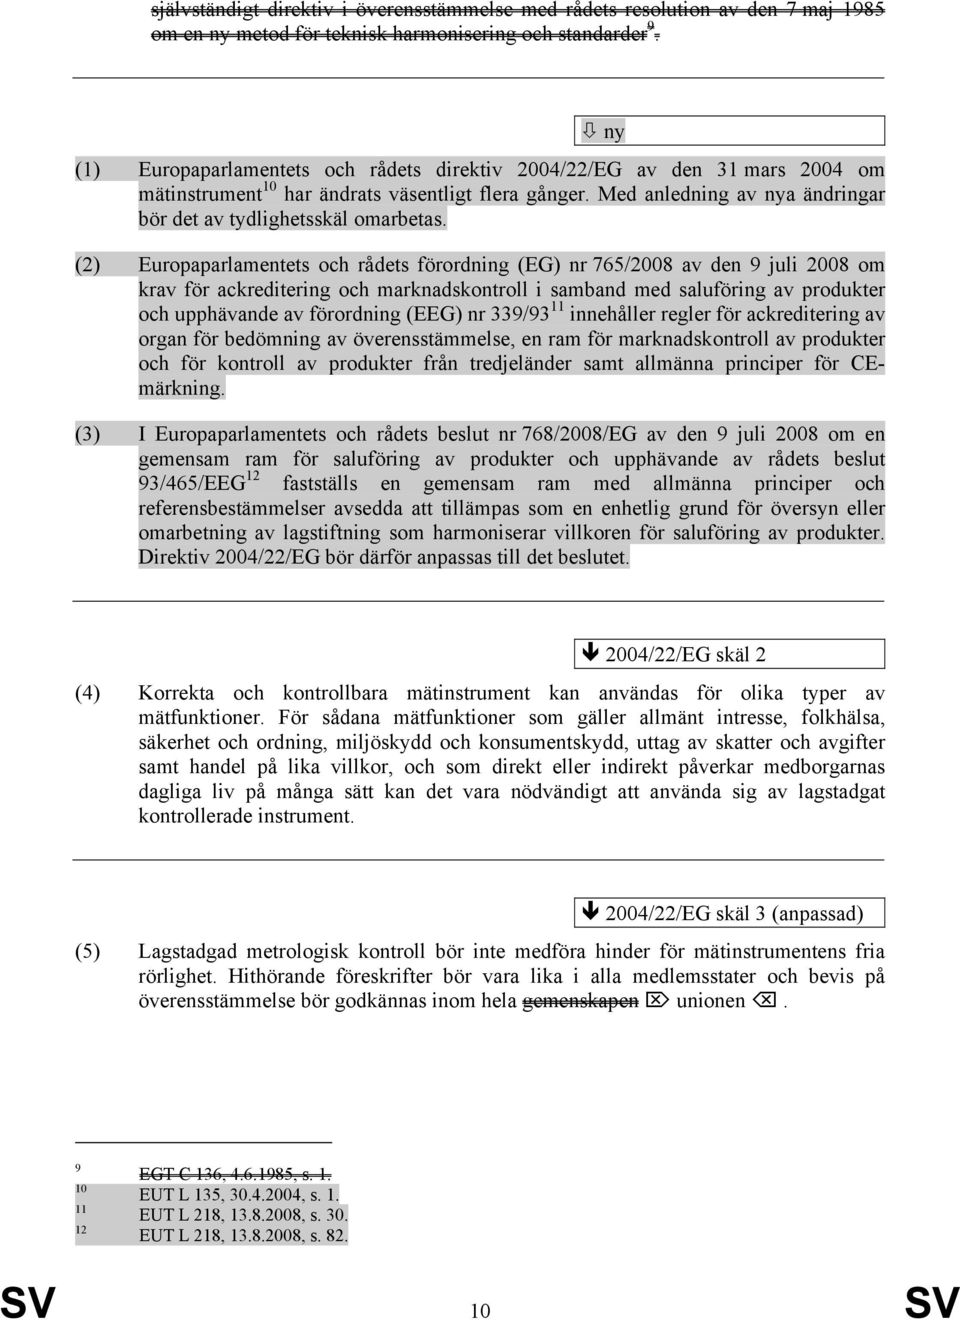 (2) Europaparlamentets och rådets förordning (EG) nr 765/2008 av den 9 juli 2008 om krav för ackreditering och marknadskontroll i samband med saluföring av produkter och upphävande av förordning